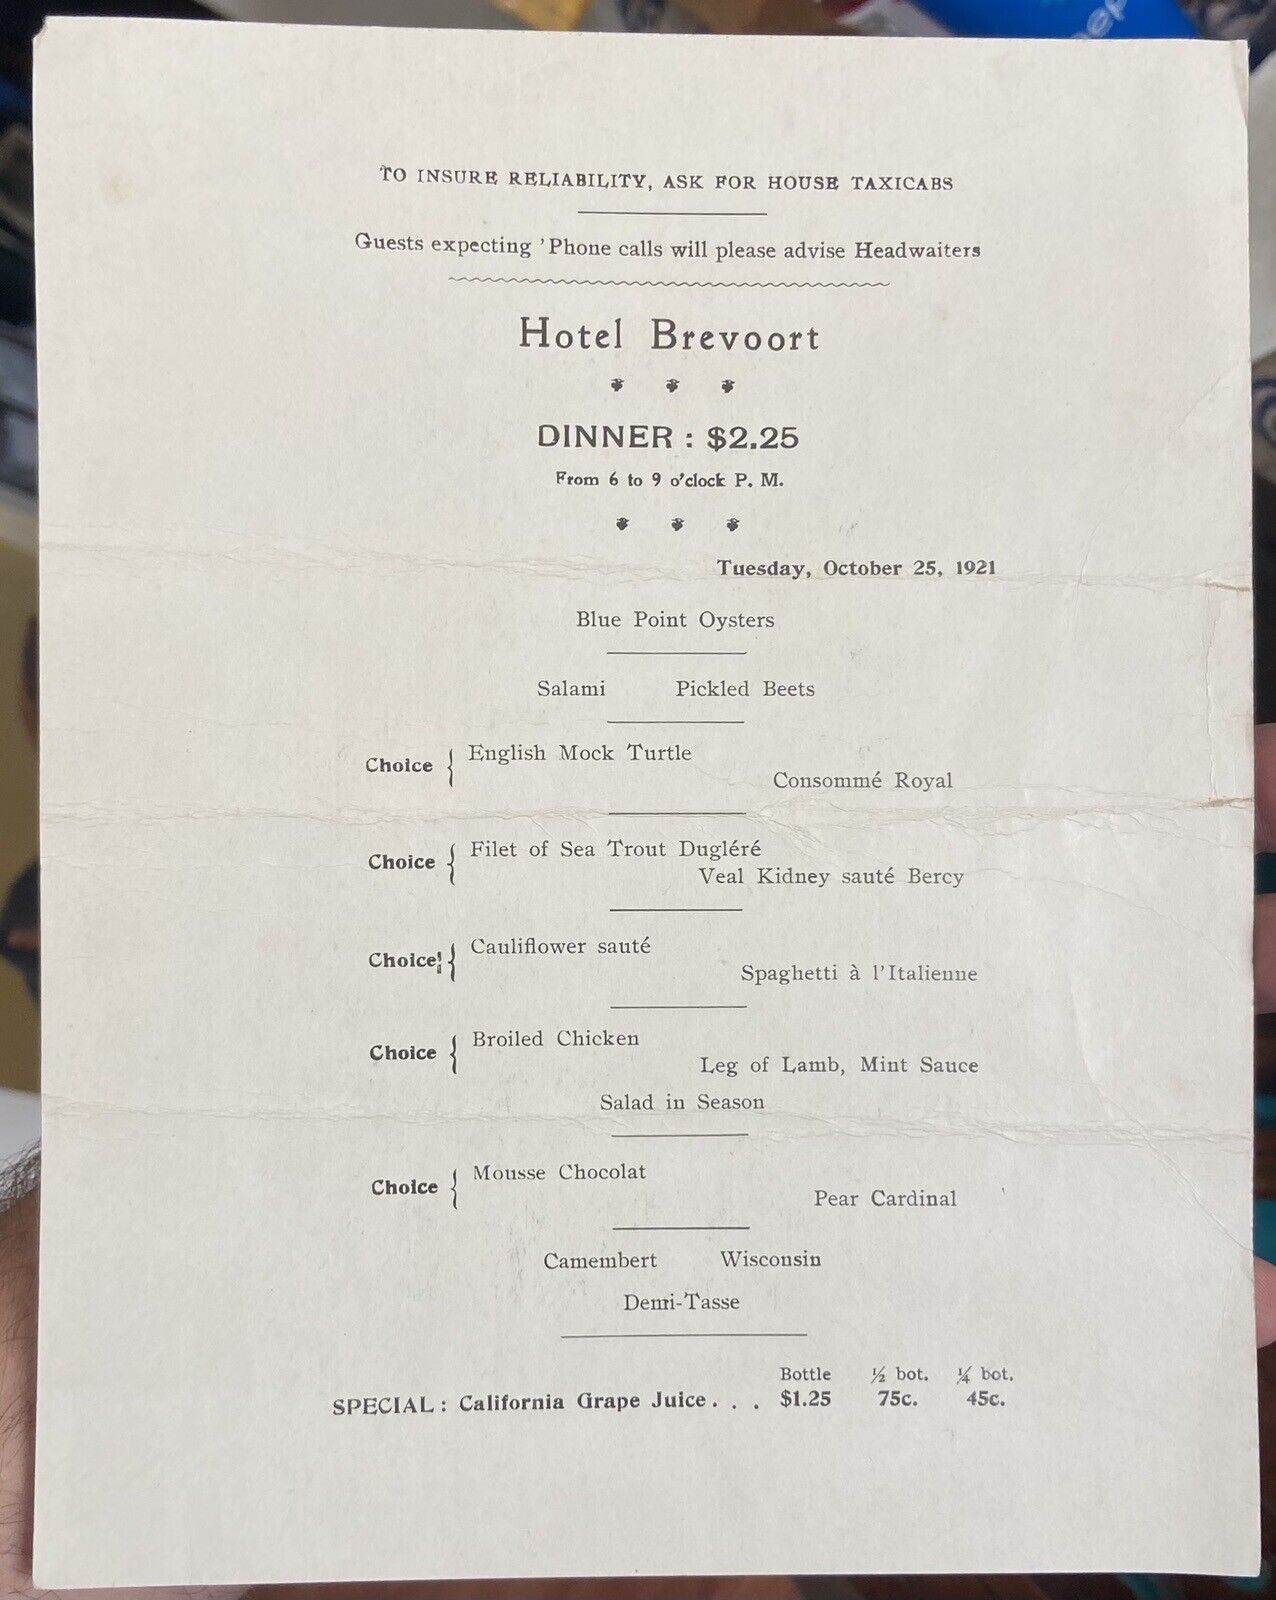 October 25, 1921 New York HOTEL BREVOORT Restaurant MENU $2.25 Dinner items